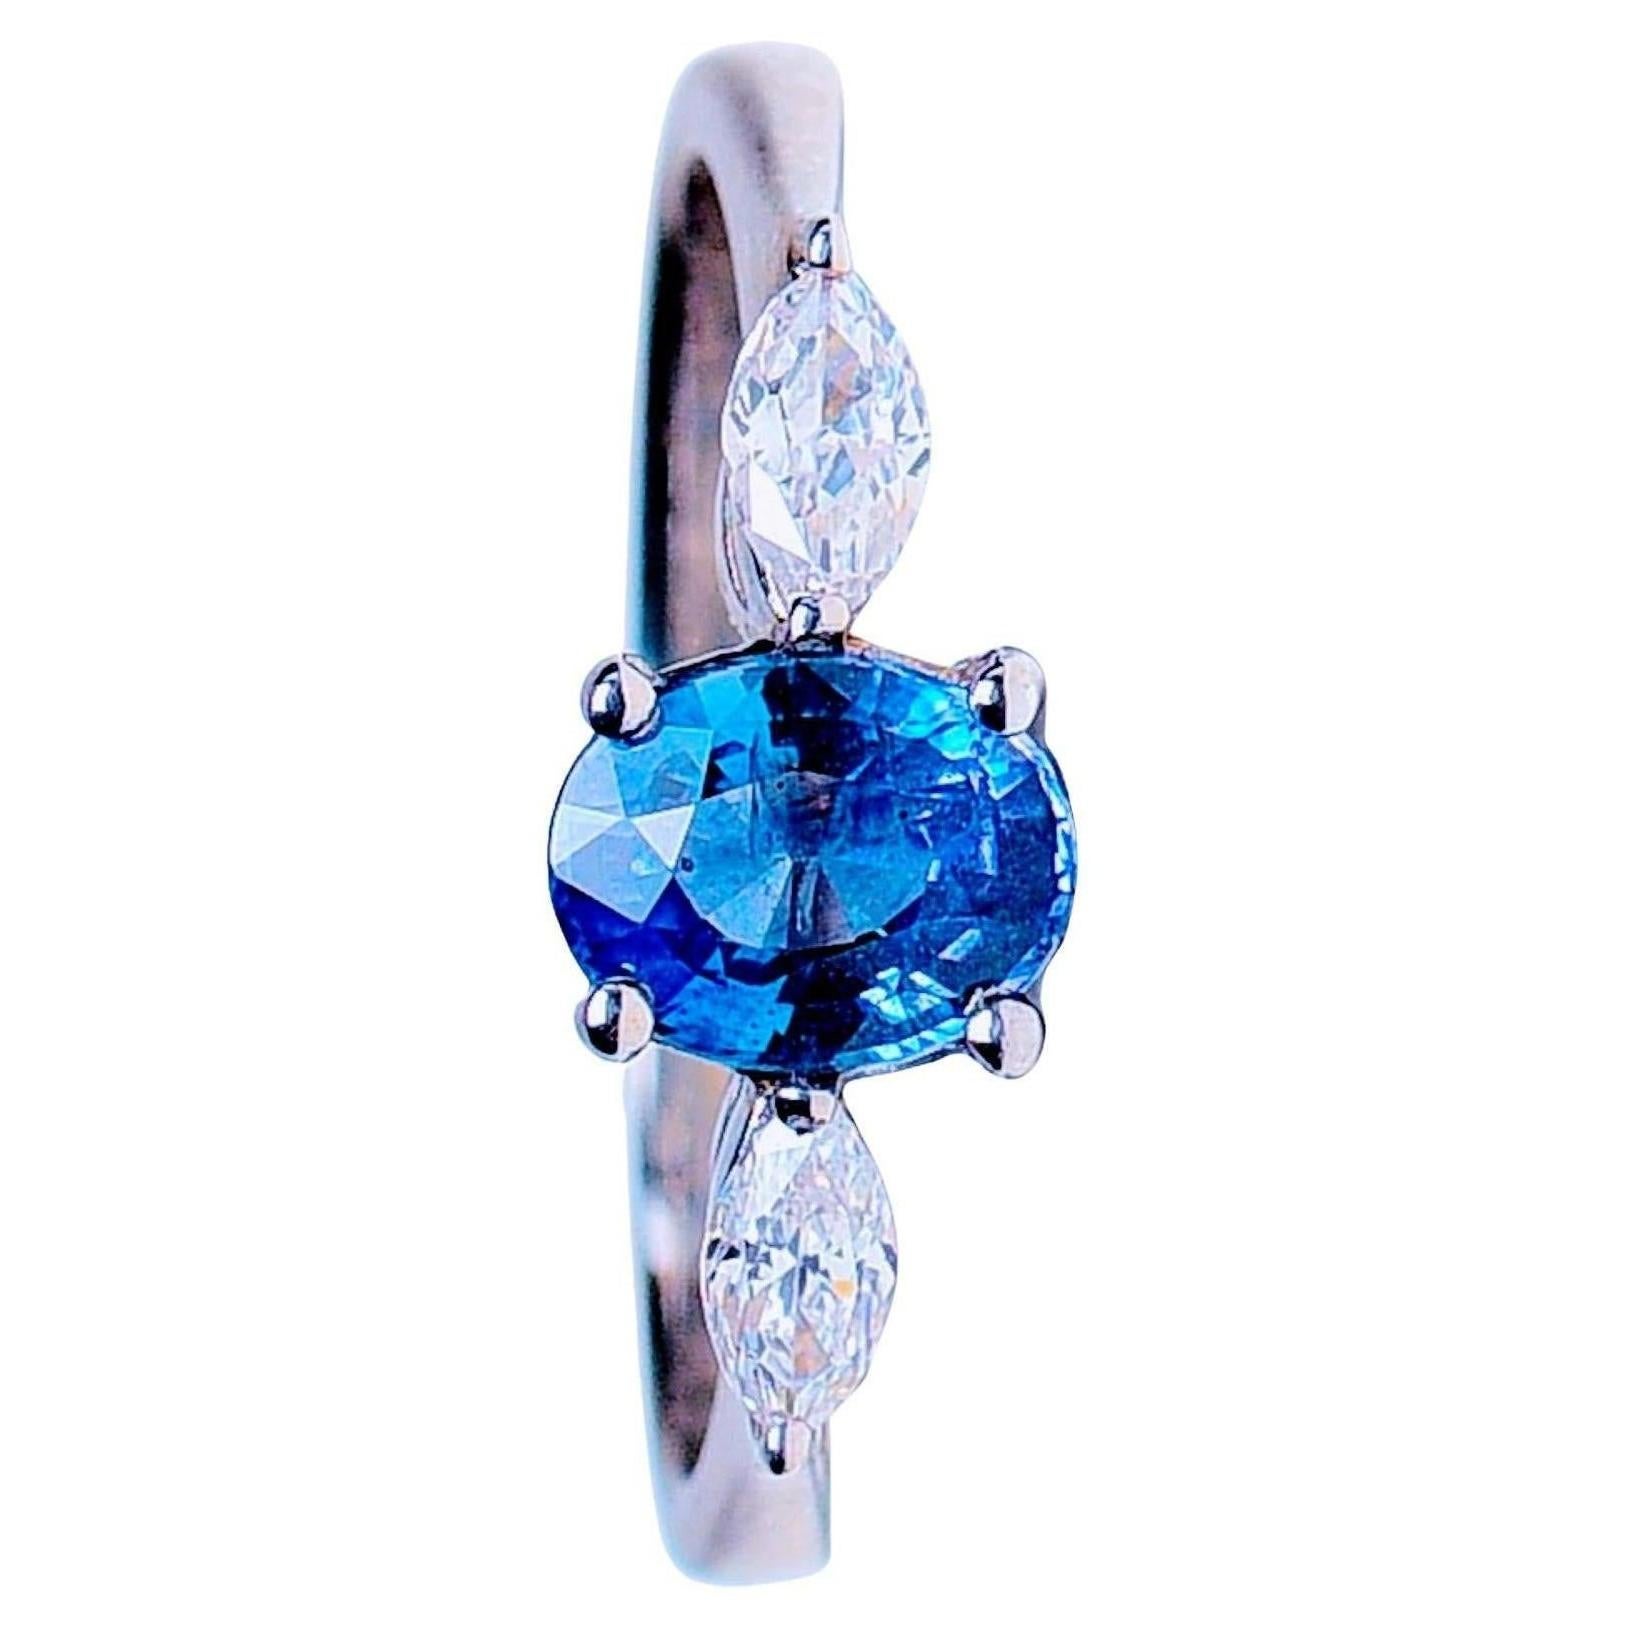  1 Karat natürlicher unbehandelter ovaler blauer Saphir 3 Stein Ring  